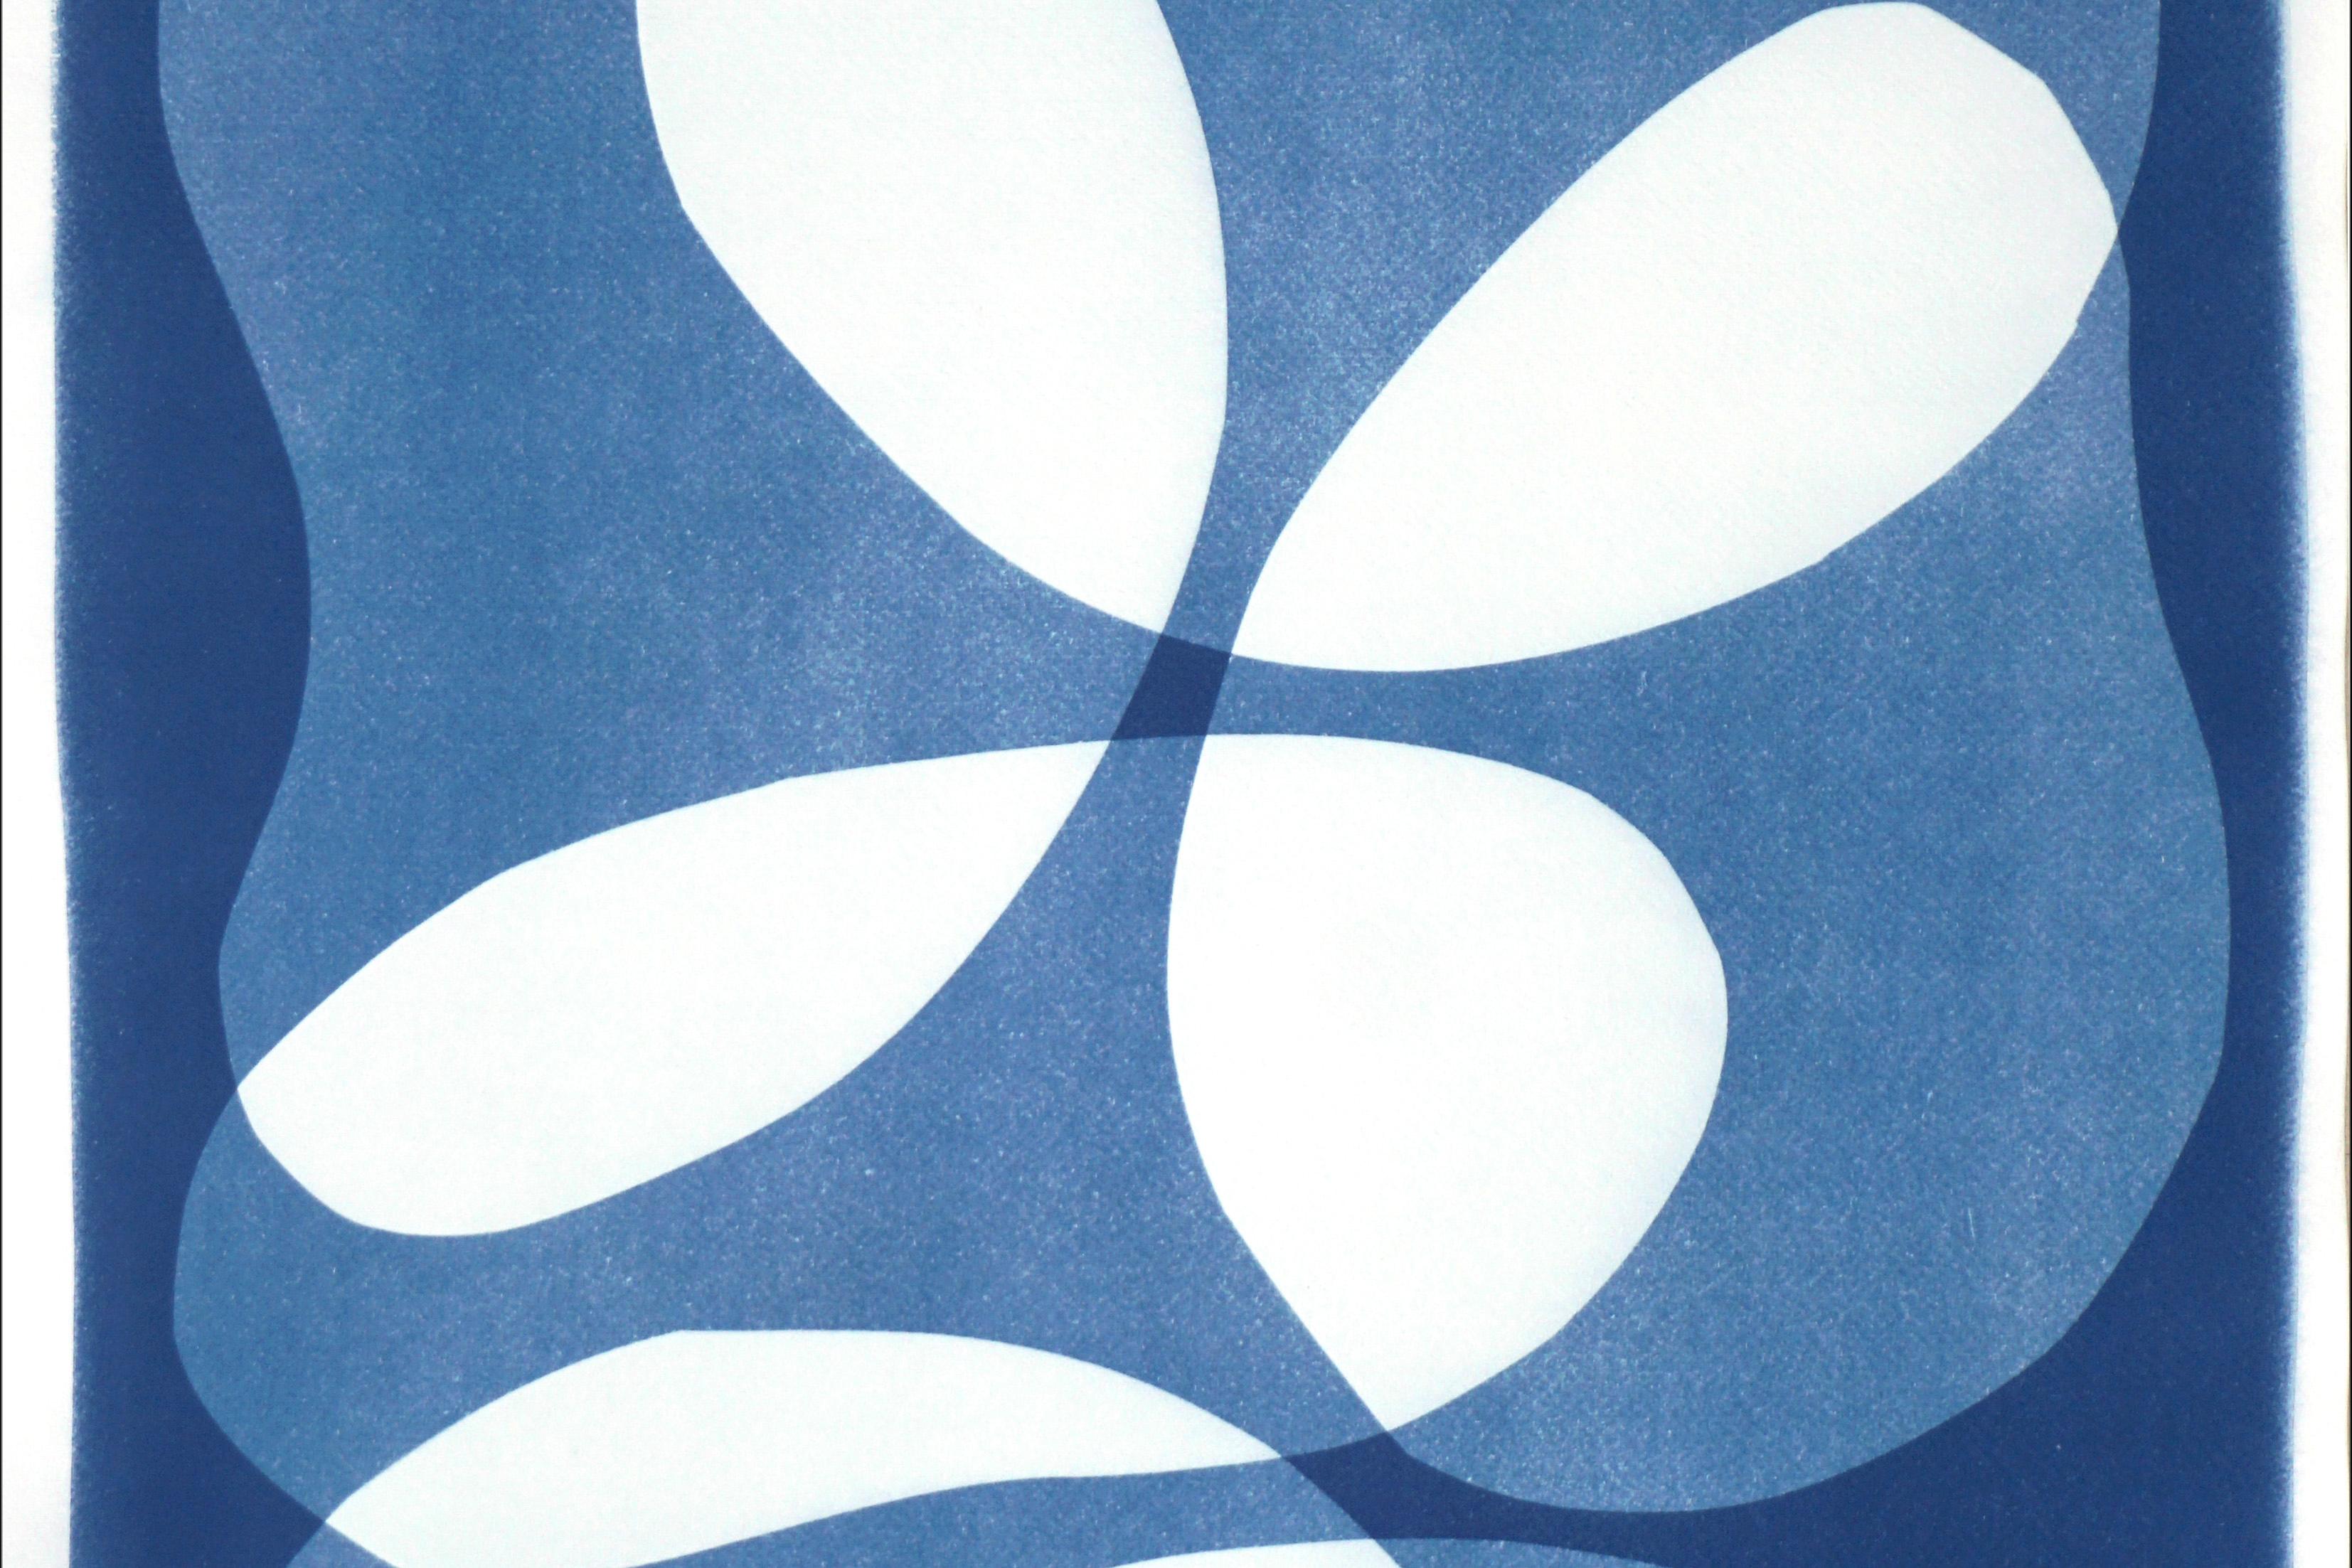 Beans en couches, blancs et bleus, formes minimalistes abstraites, 2022 - Bleu Abstract Print par Kind of Cyan